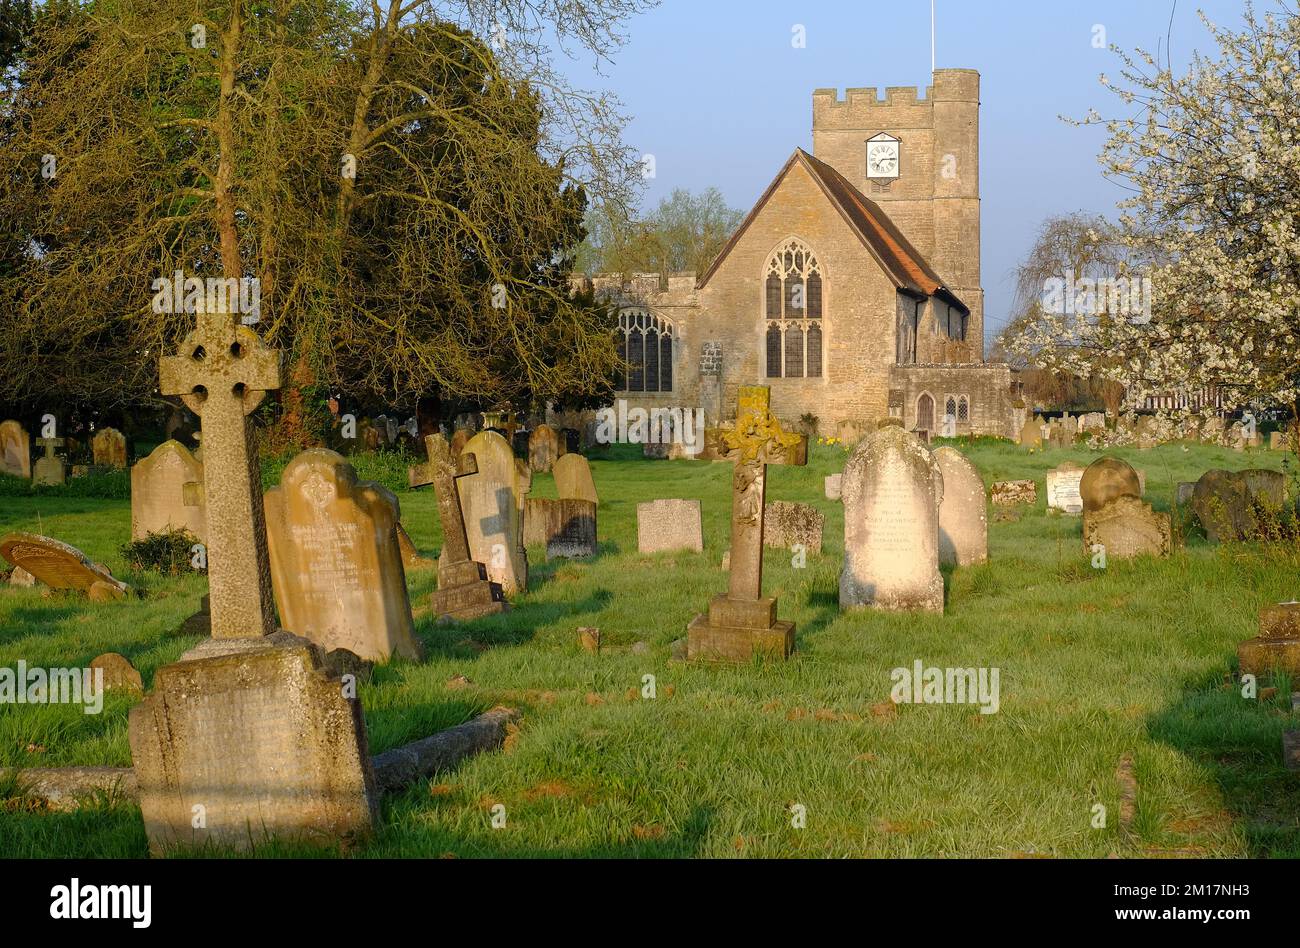 Headcorn : église Saint-Pierre et St-Paul avec cimetière et arbres en fleurs qui illuminent l'or peu après le lever du soleil à Headcorn, Kent, Angleterre Banque D'Images